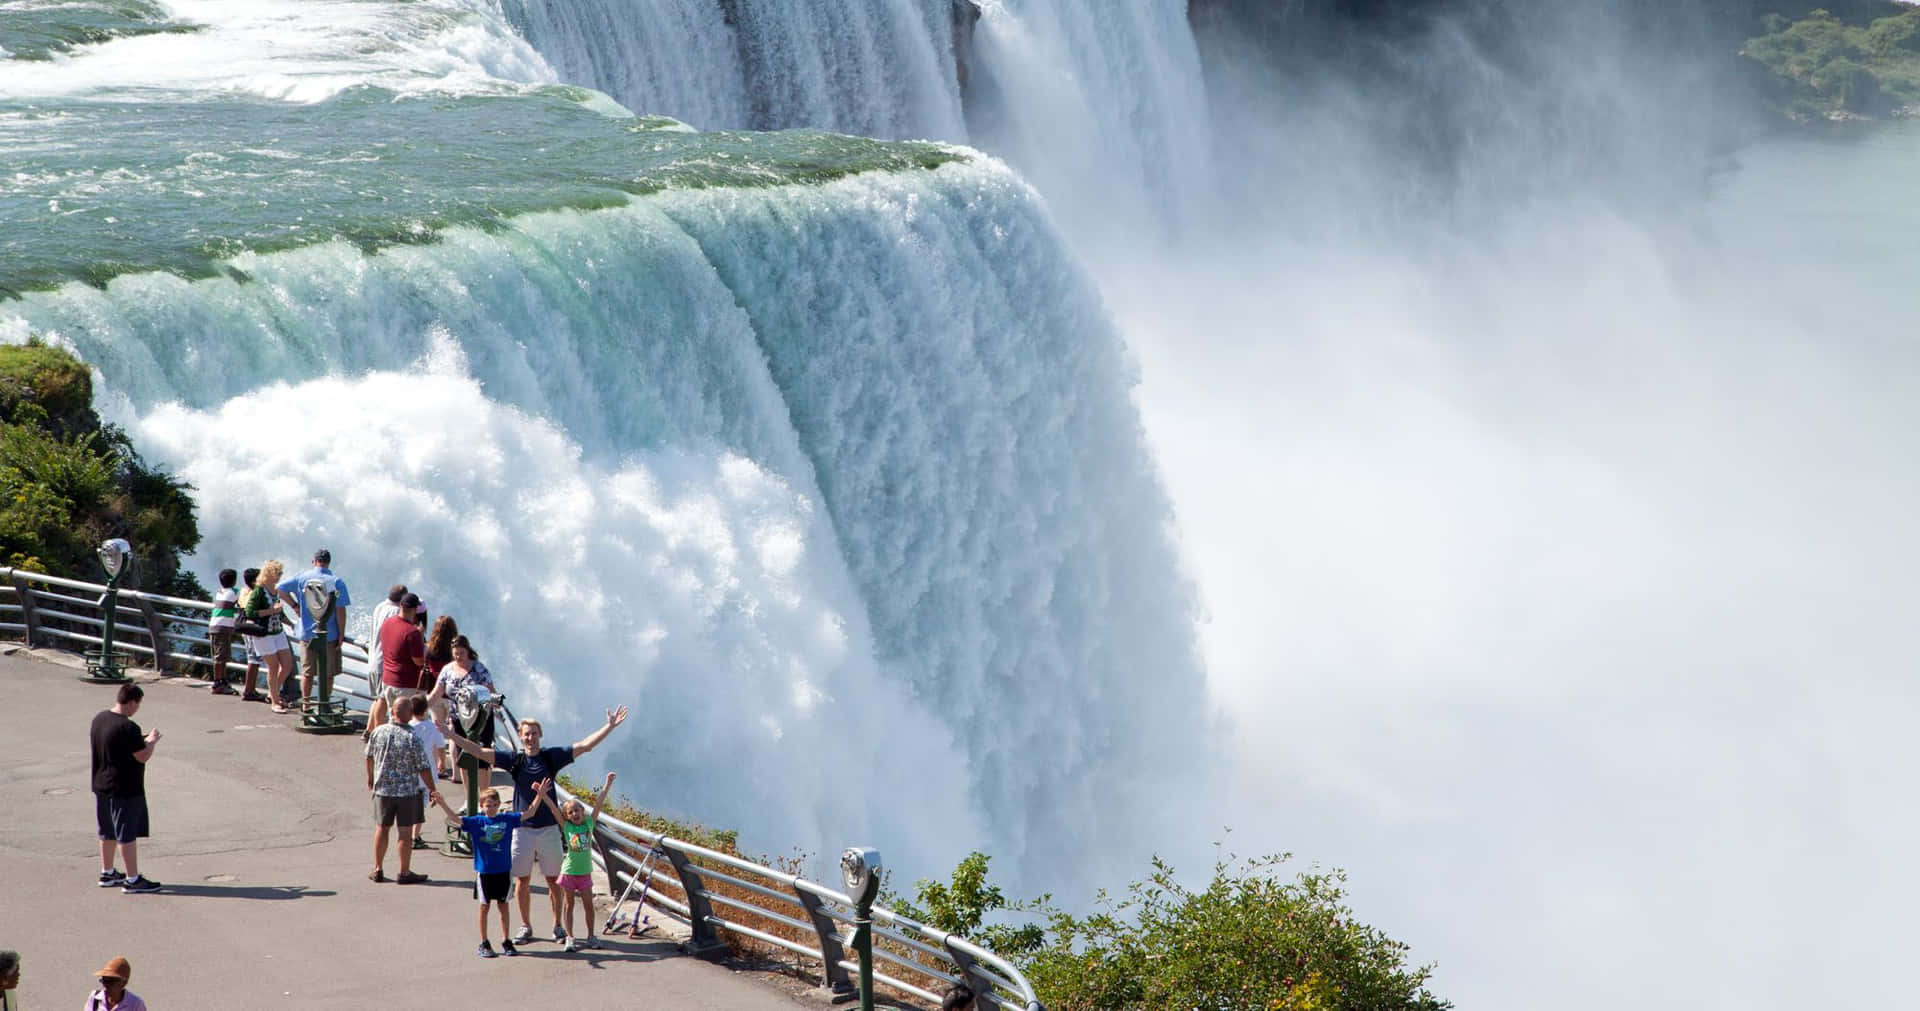 Seeing the beautiful Niagara Falls